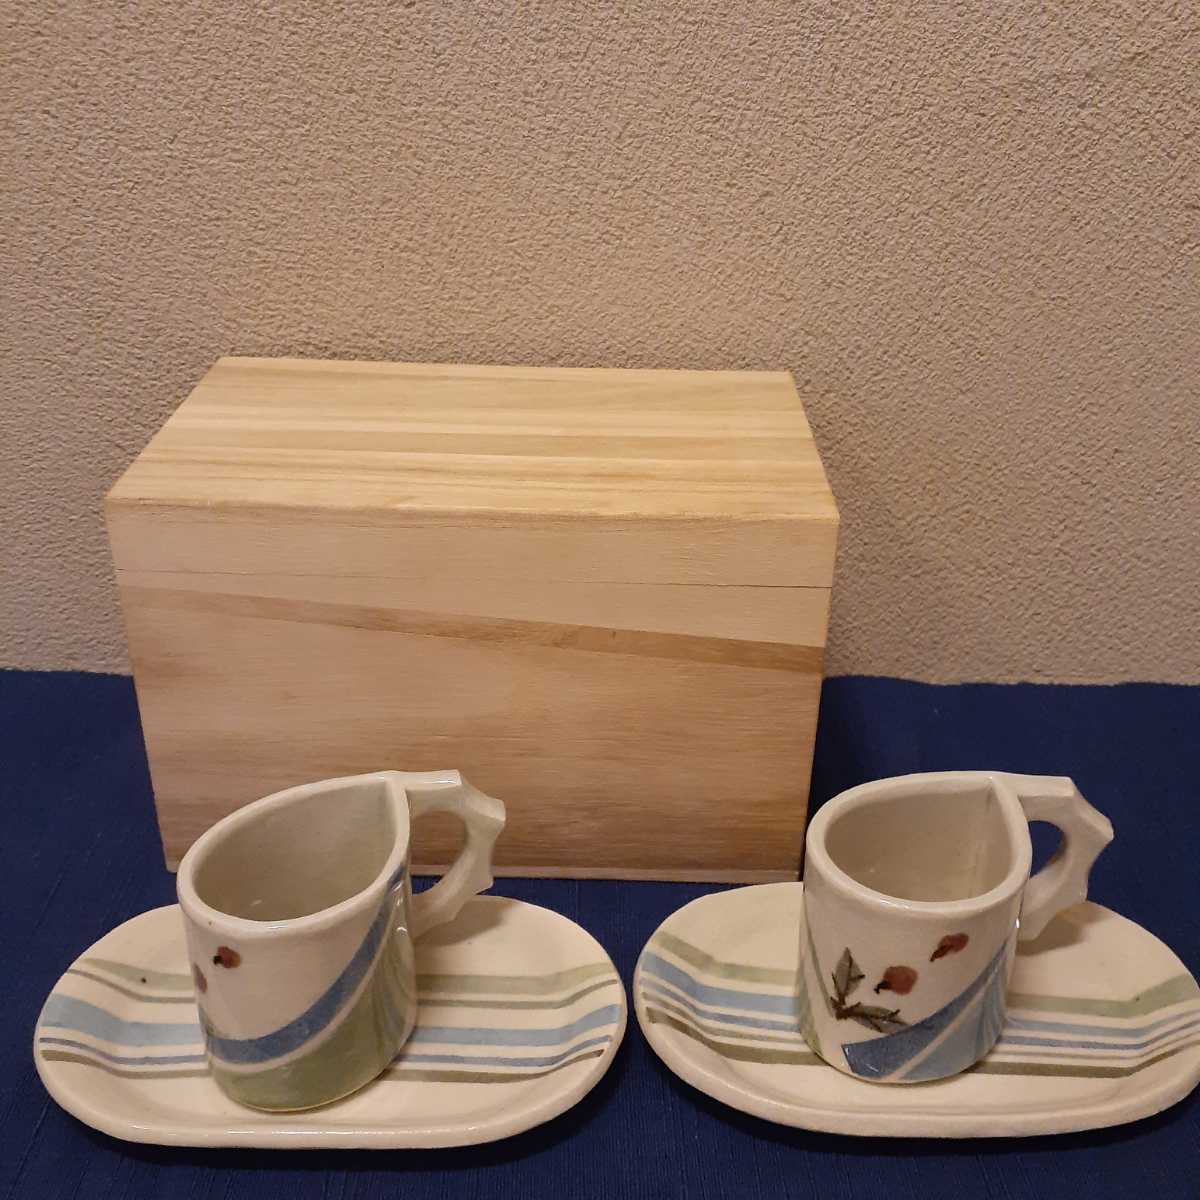 珈琲茶碗 コーヒーカップ 作家物 共箱 皿約17.5cm×10.7cm×1.5cm カップ約10cm×6.5cm×6cm